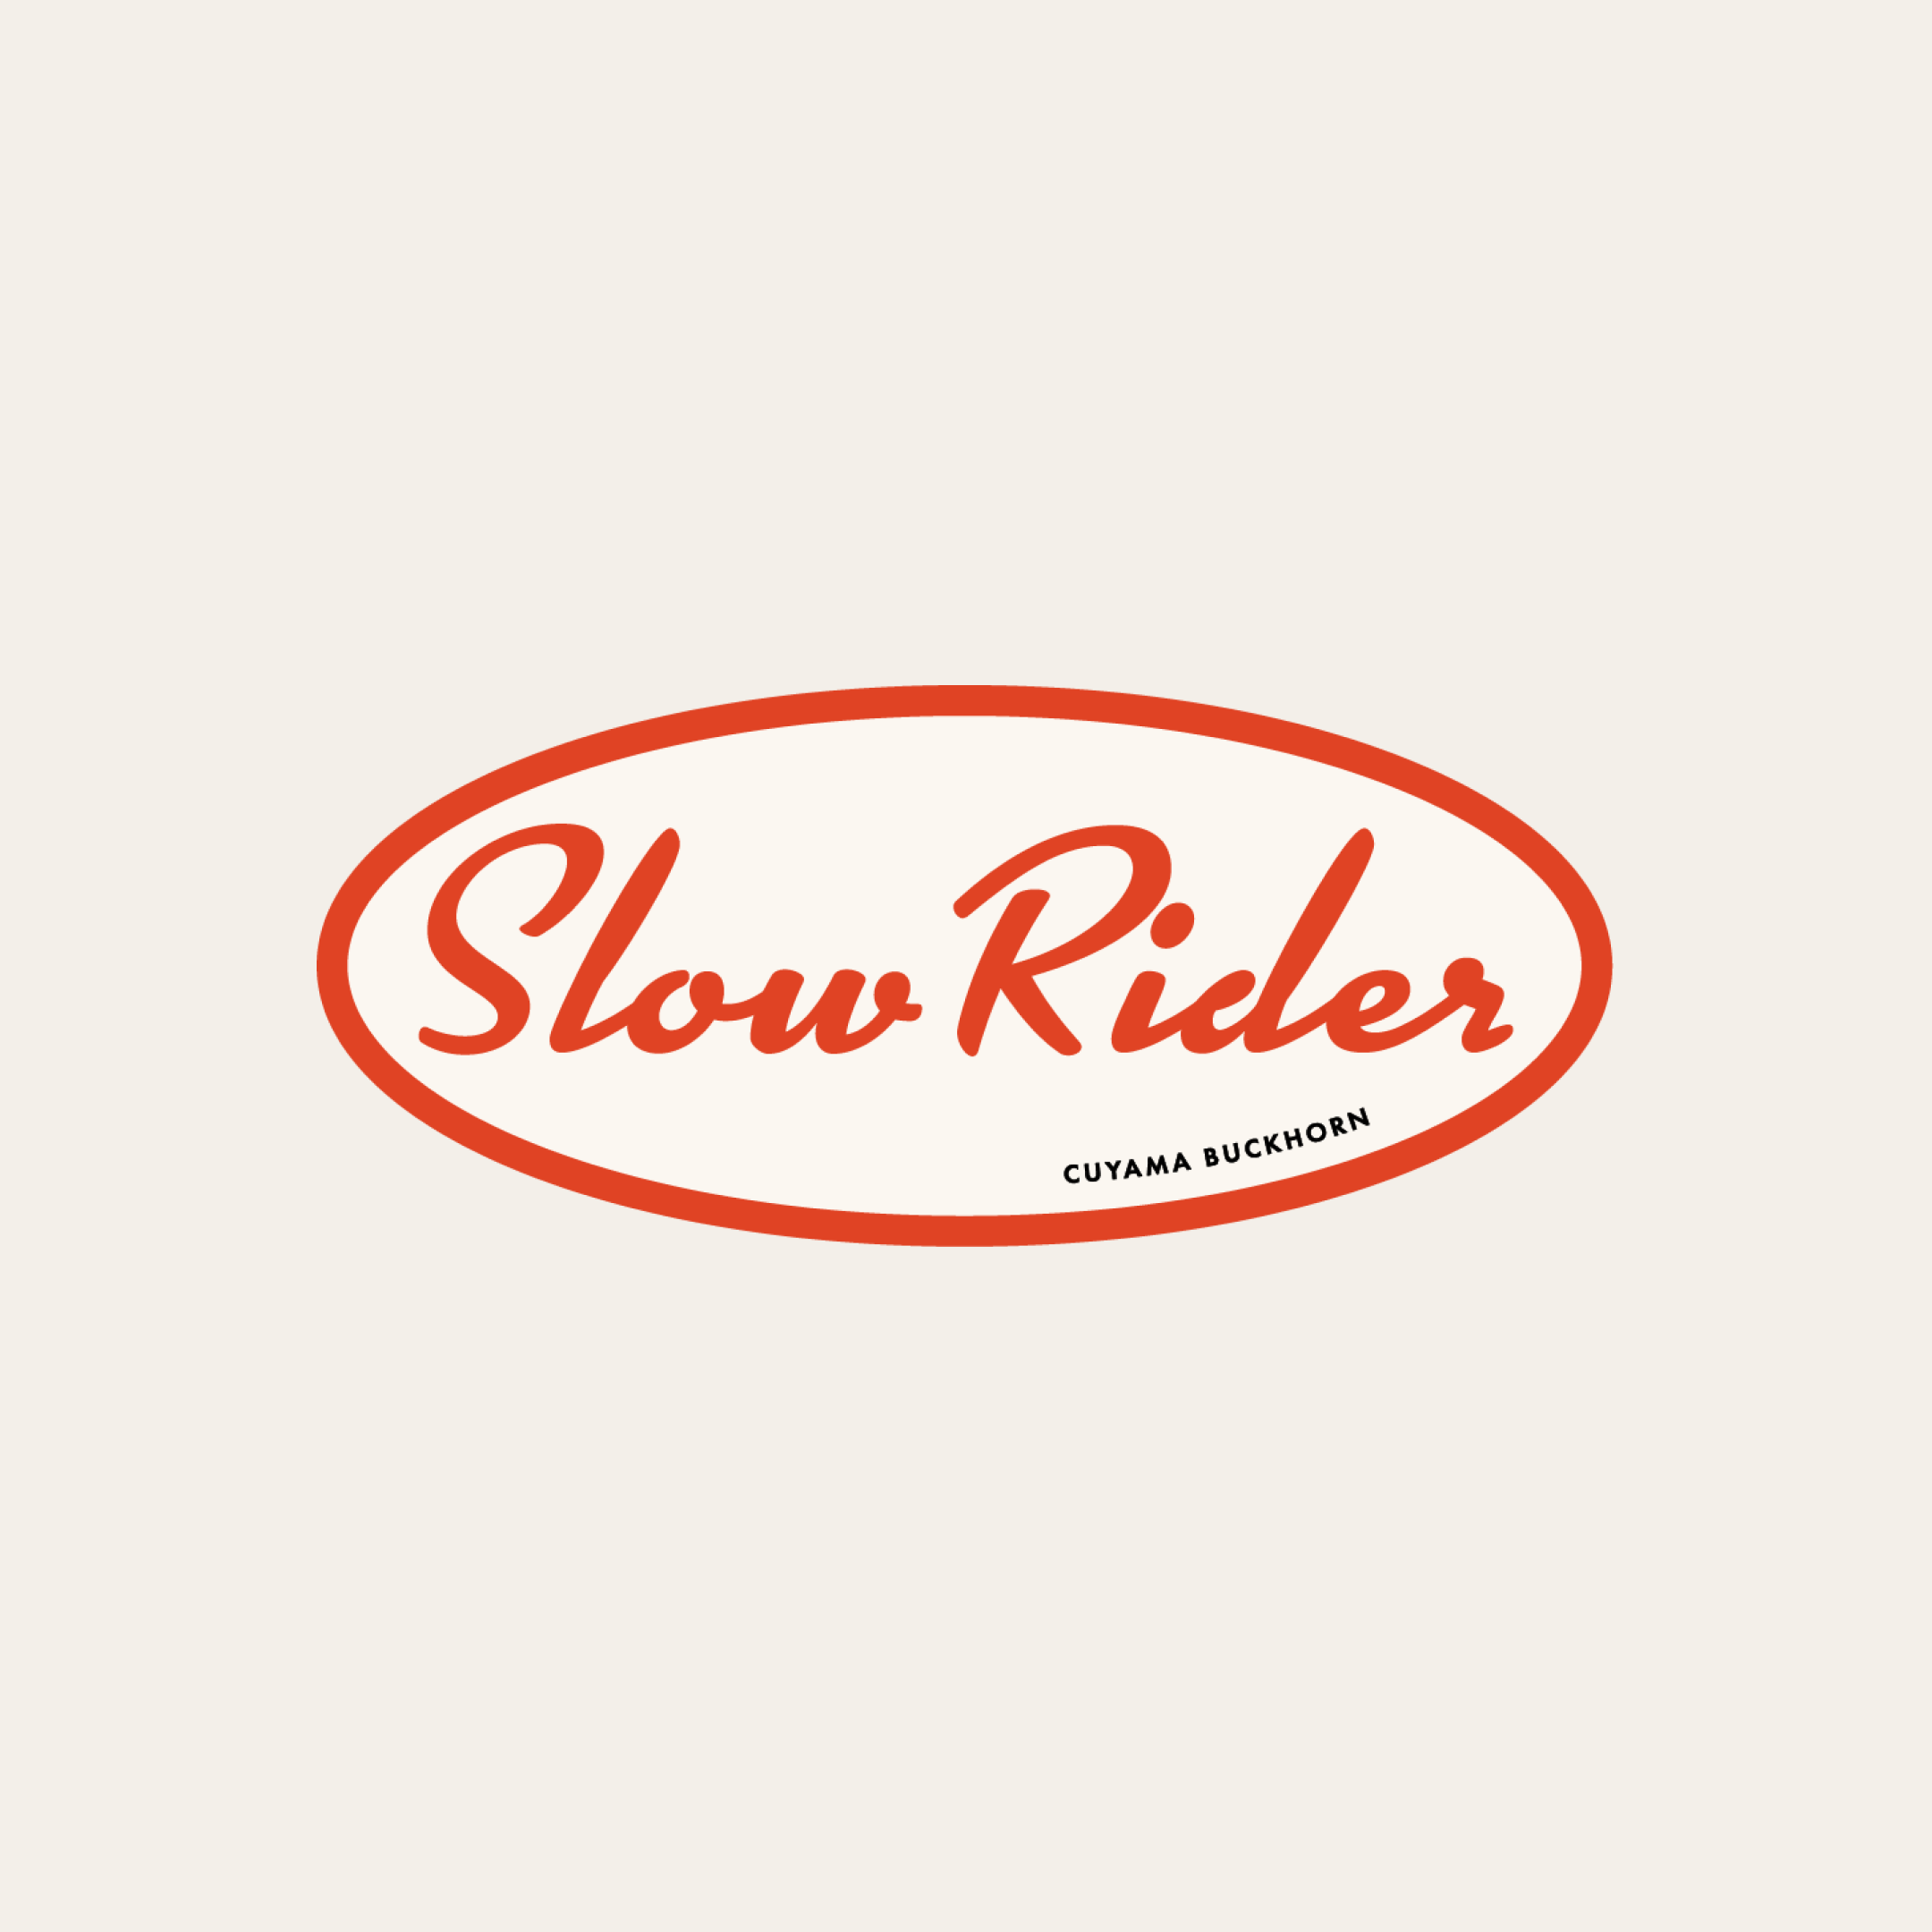 Slow Rider Sticker – Cuyama Buckhorn